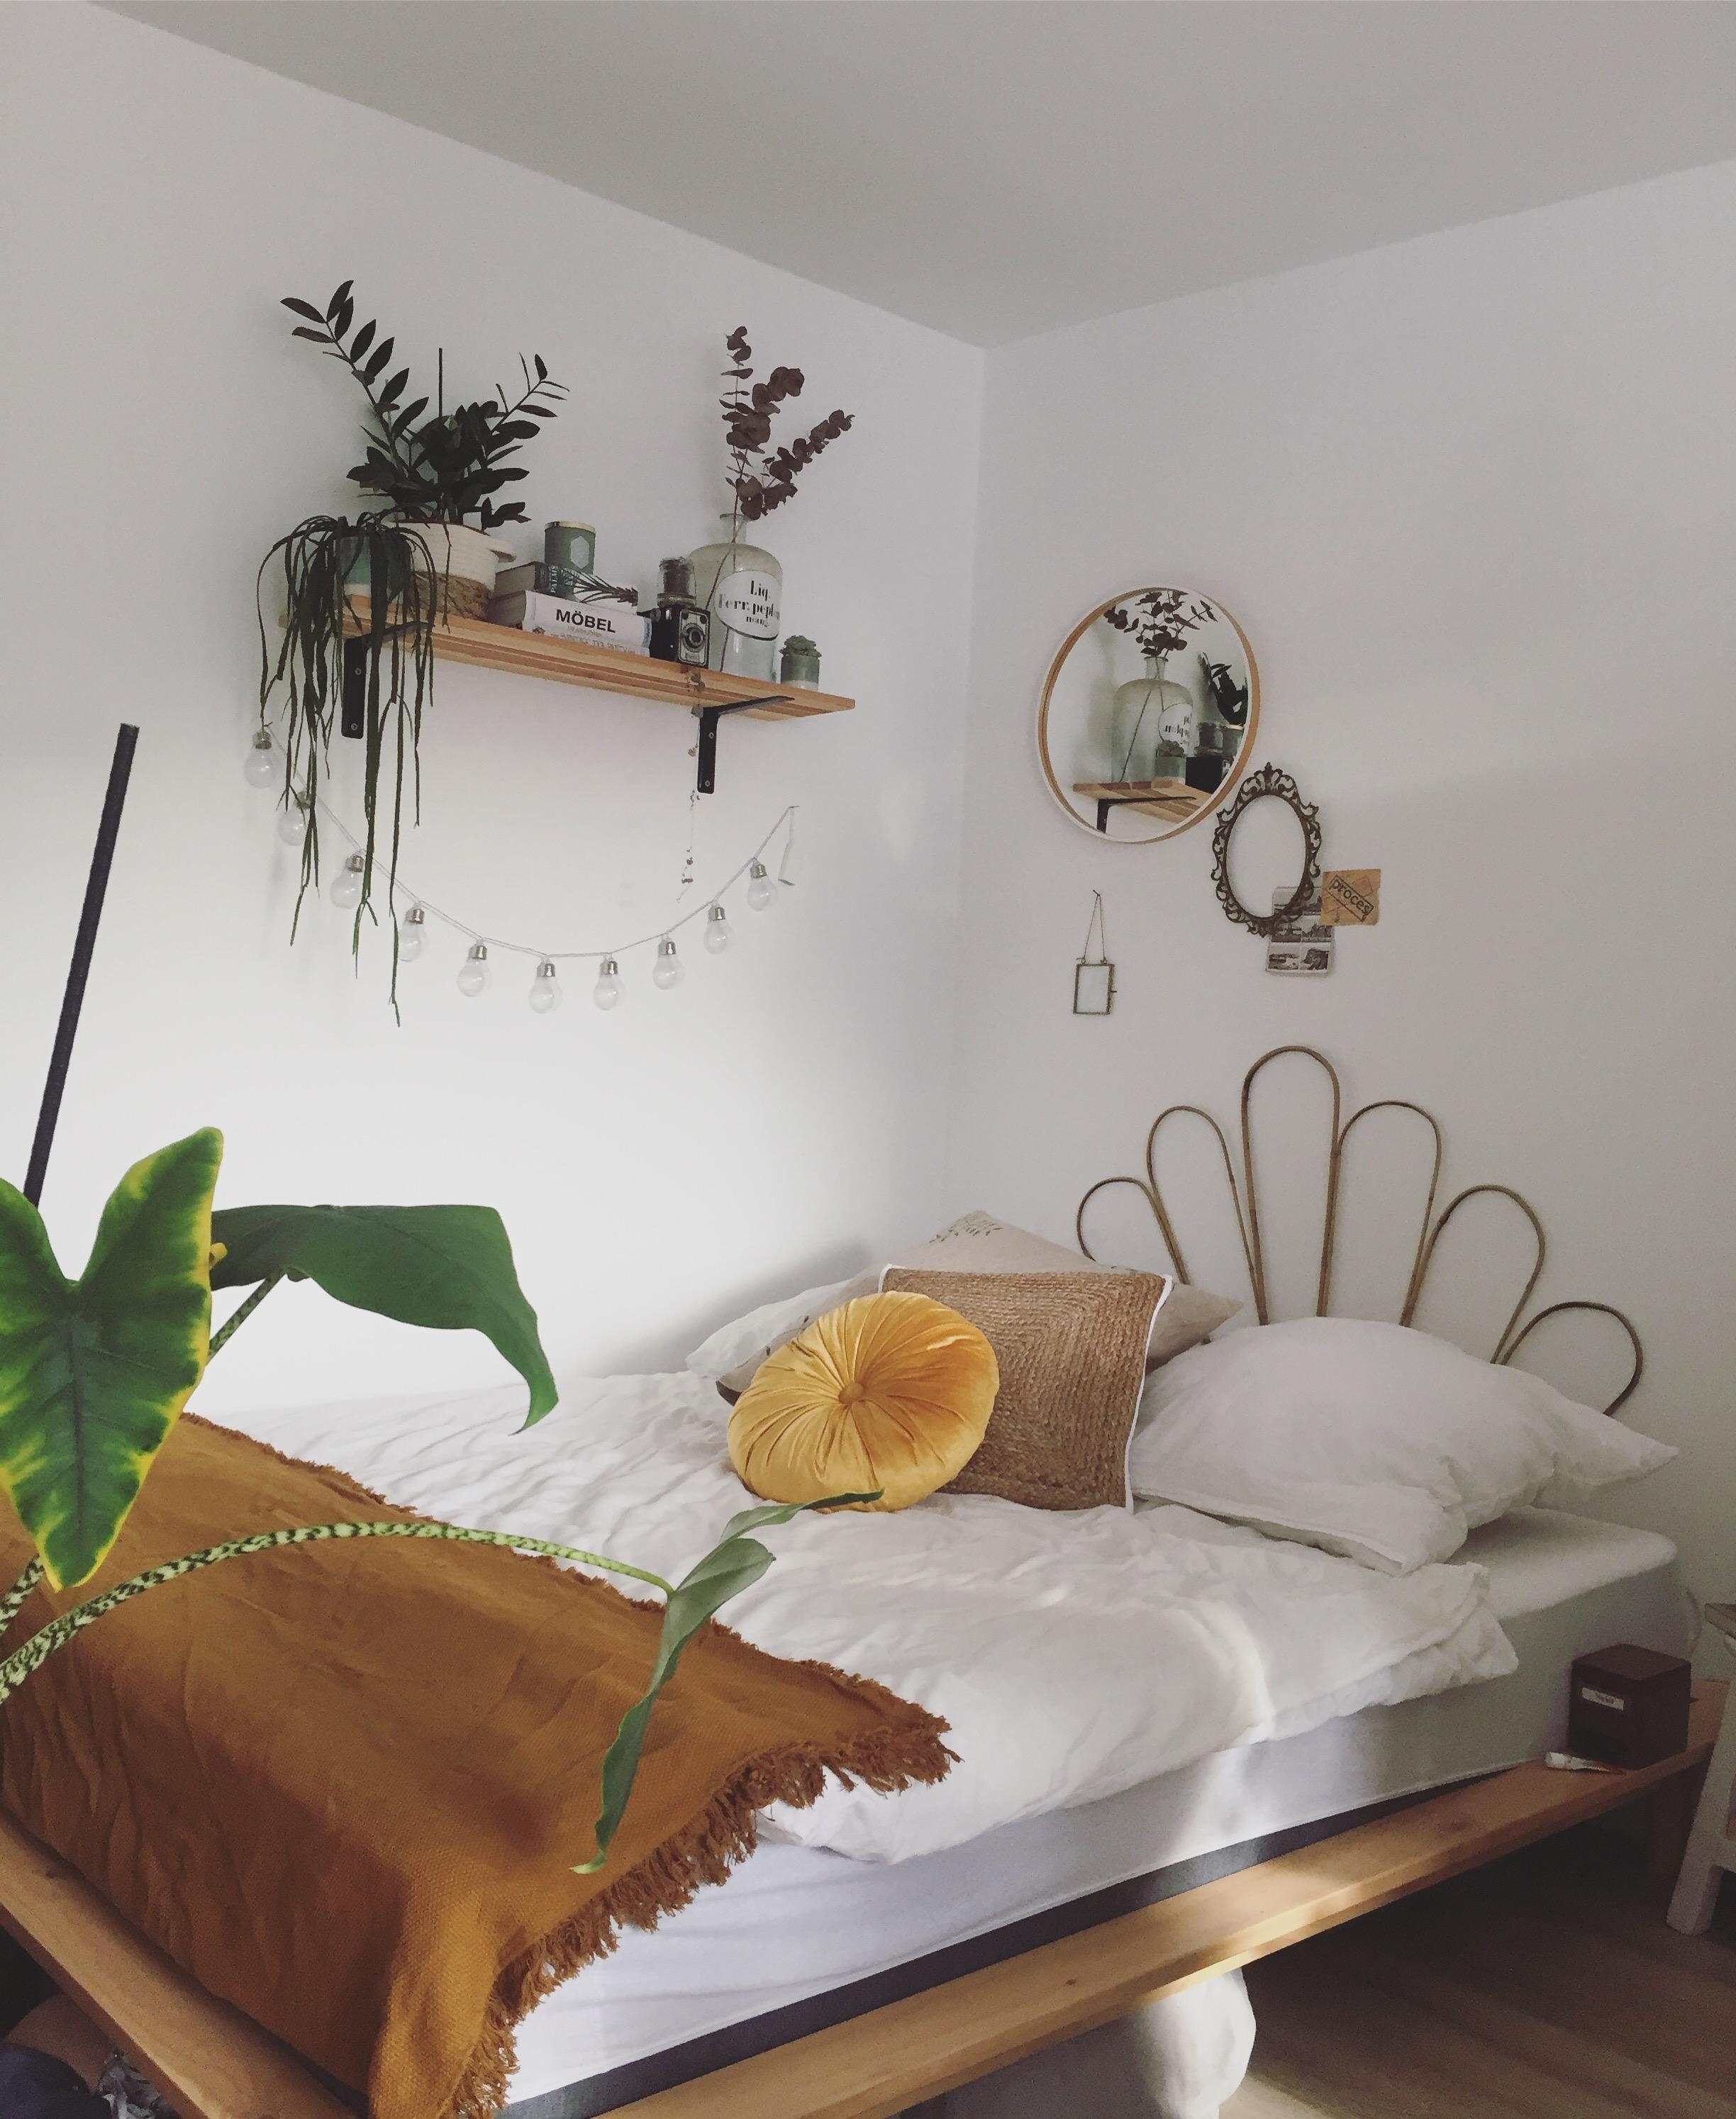 Cozy Bedroom 
#bedroom #hyggehome #plantlover 
#cozy #interior 